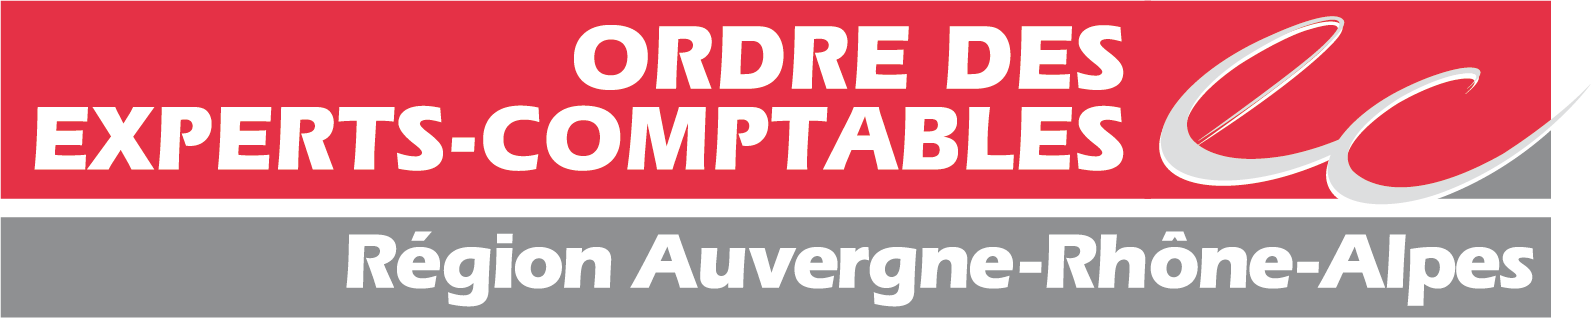 Ordre des experts-comptables Auvergne-Rhône-Alpes